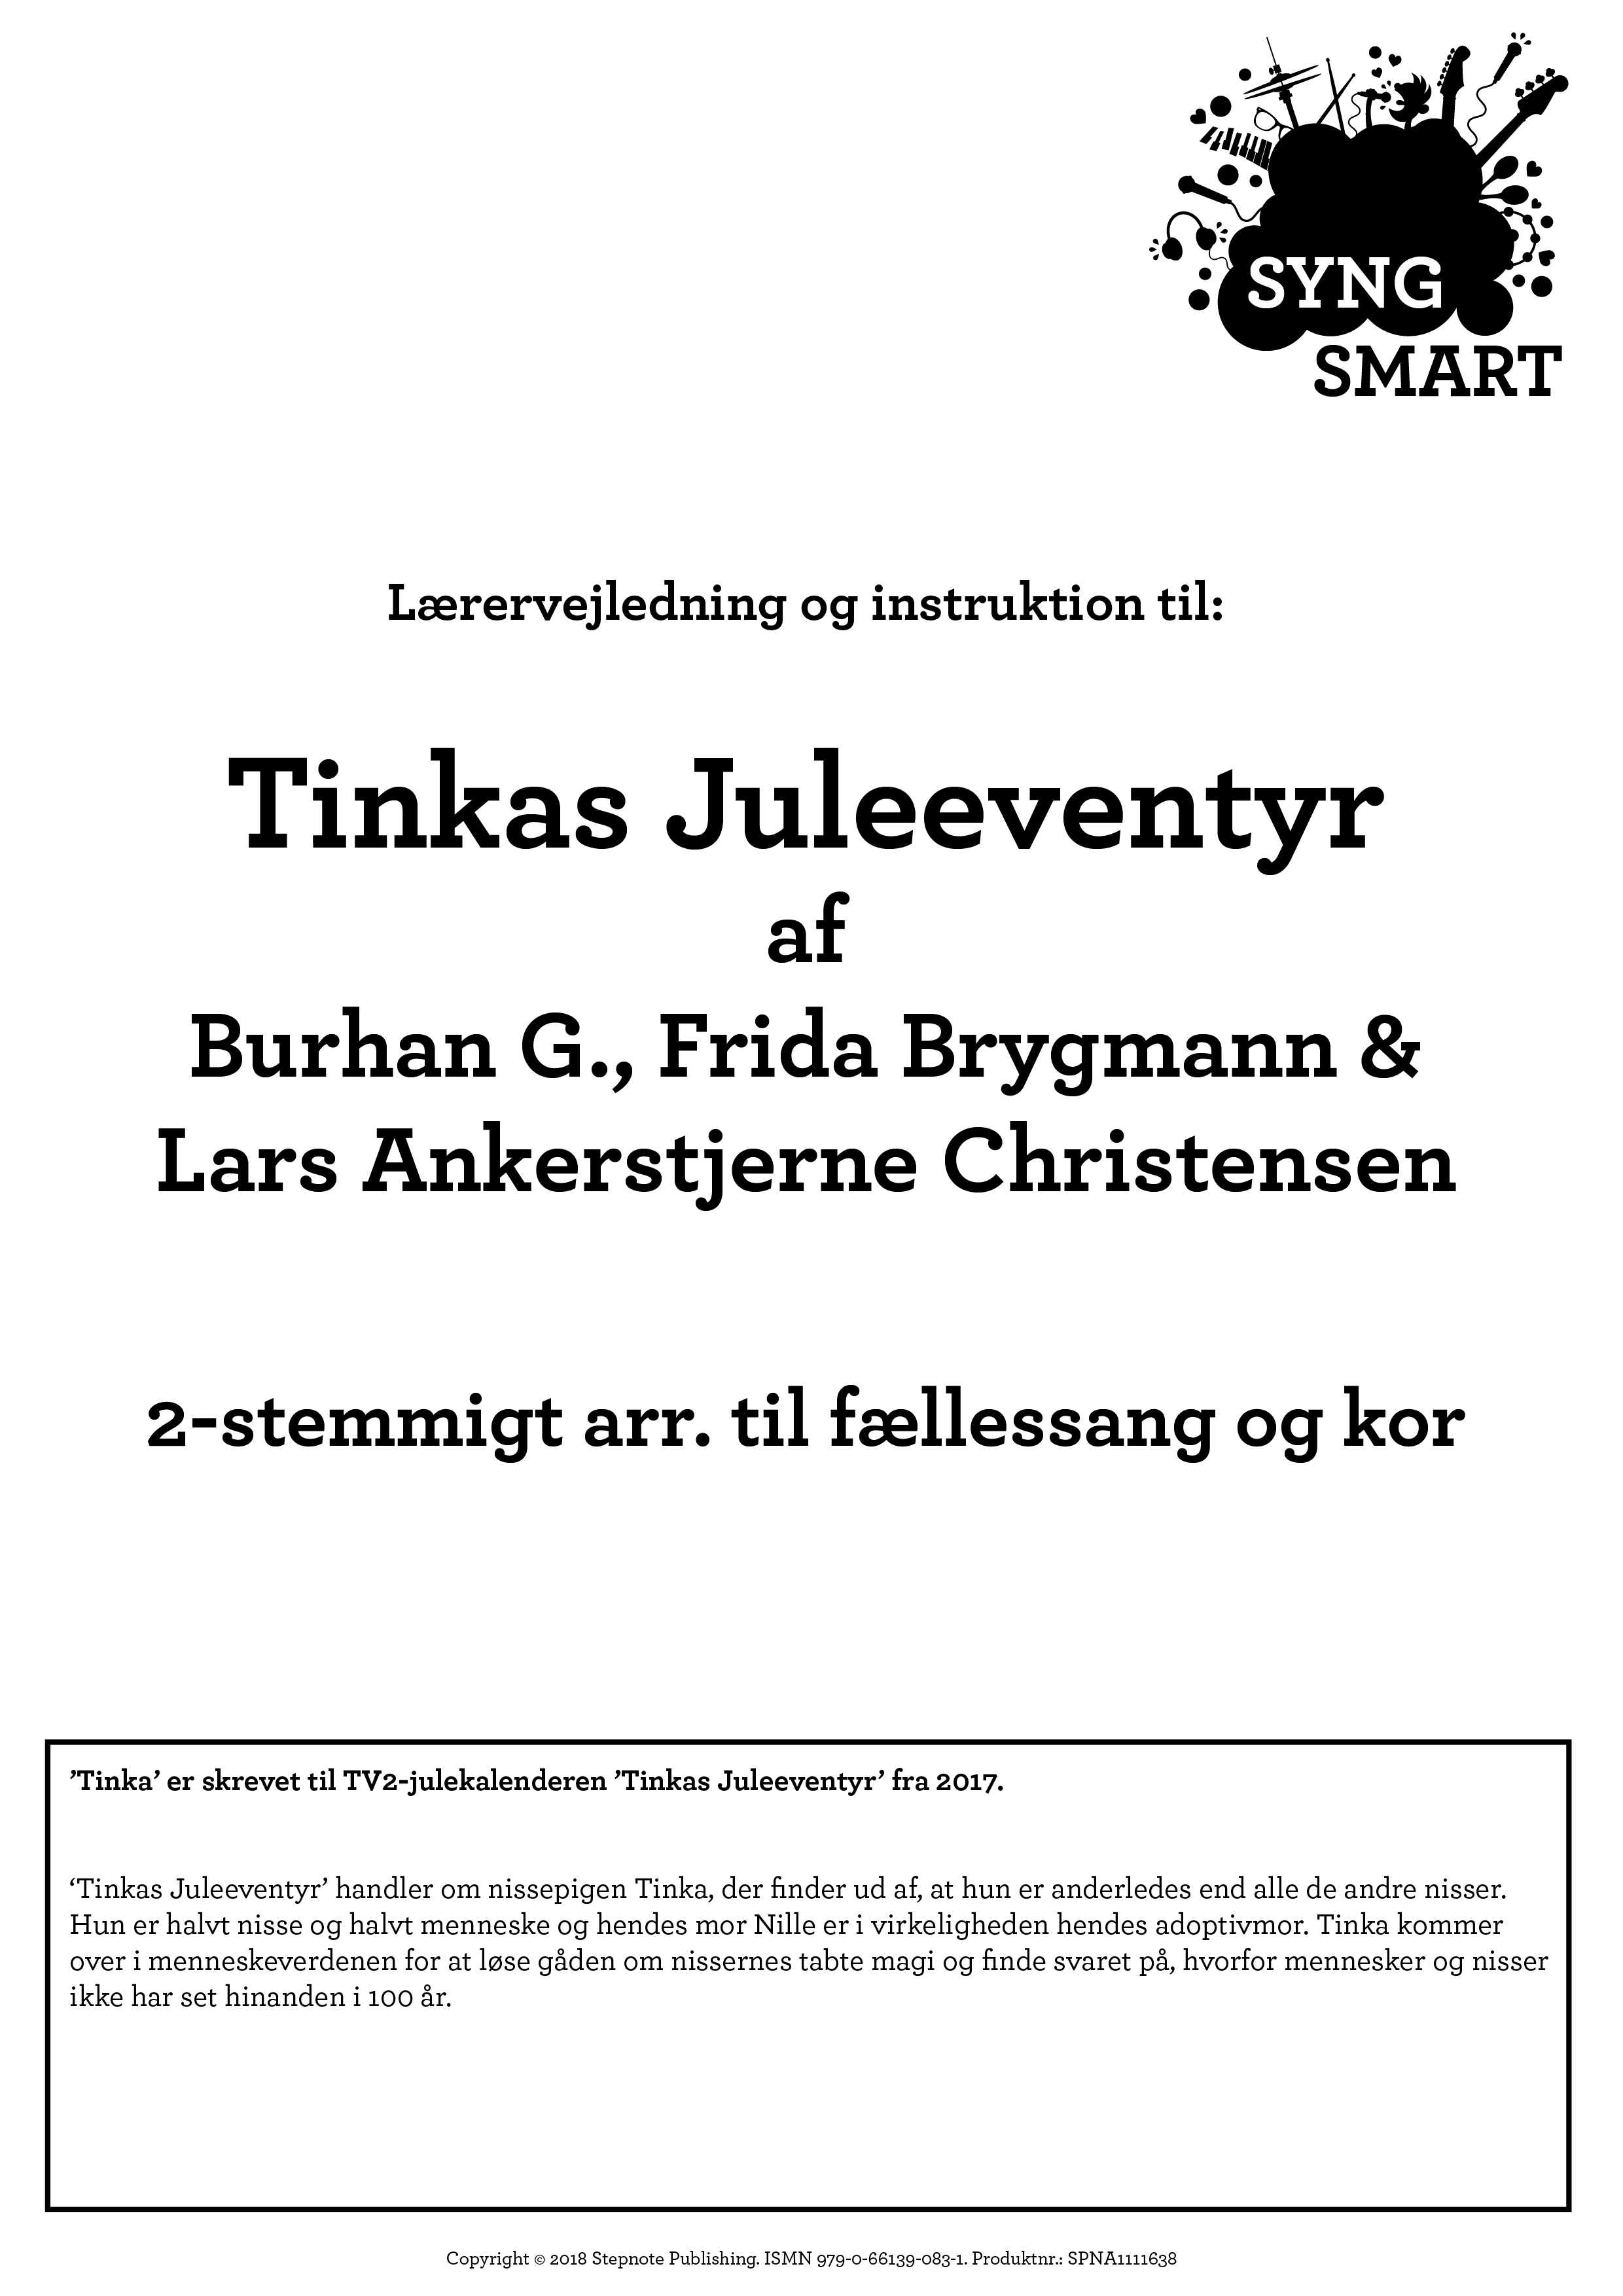 Tinka - Tinkas Juleeventyr Titelsangen - 2-stemmigt Syng Smart arr. til fællessang og kor